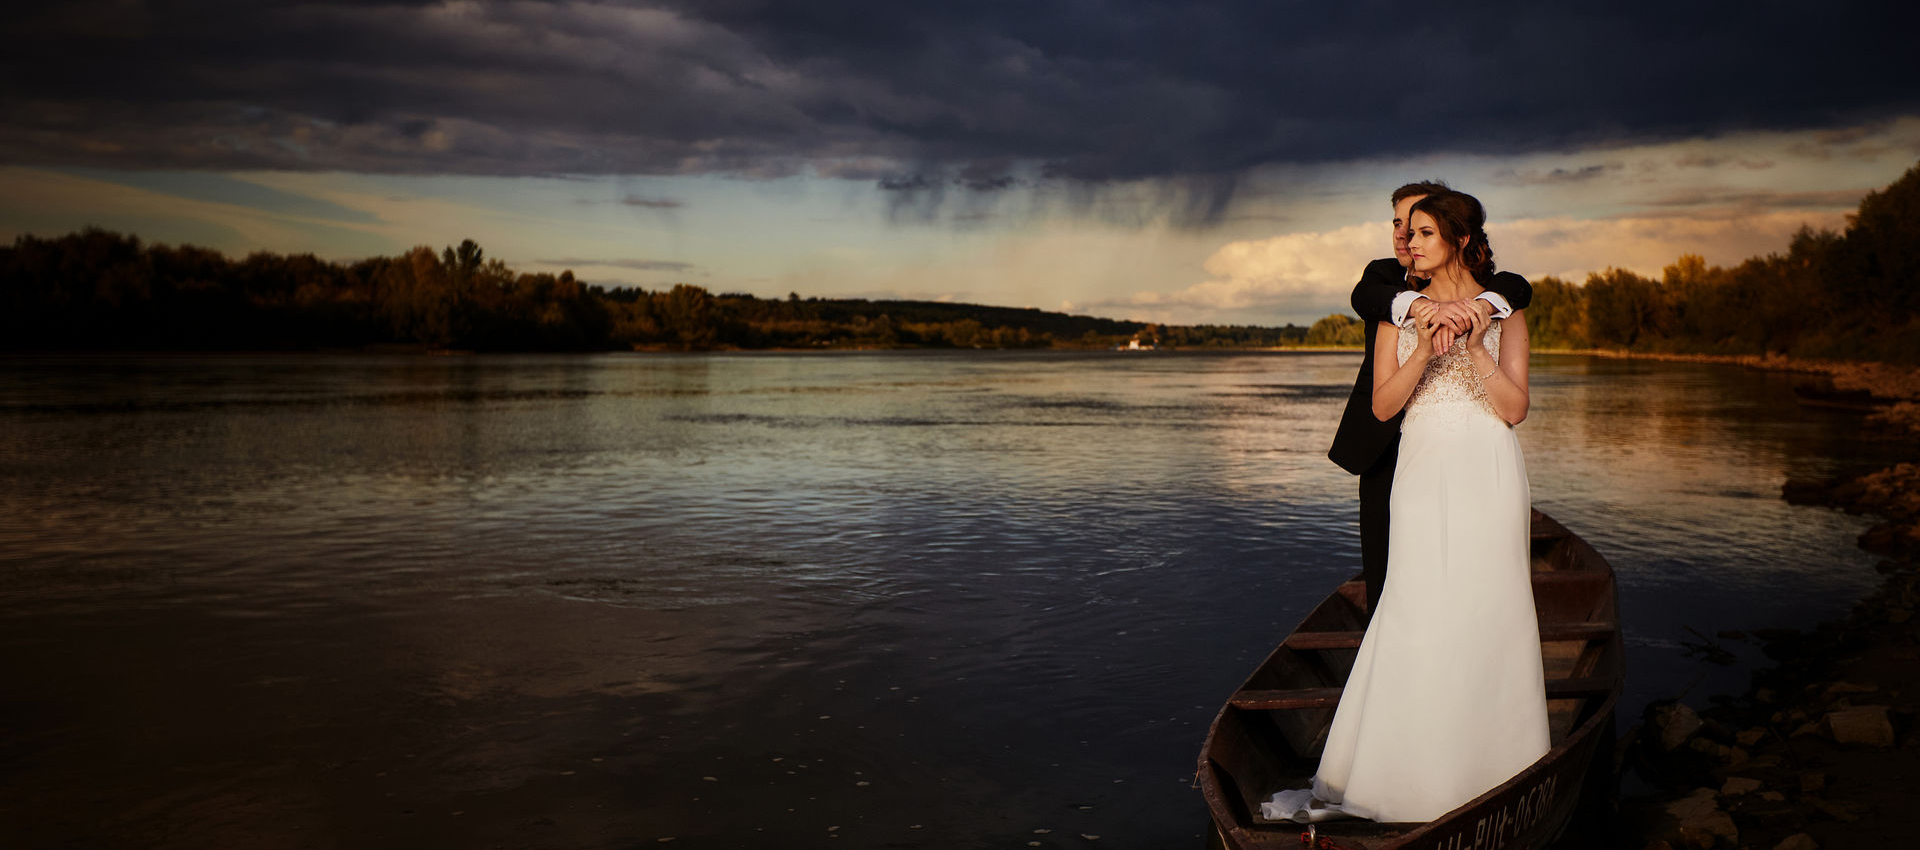 Romantyczna fotografia ślubna nad jeziorem wieczorową porą